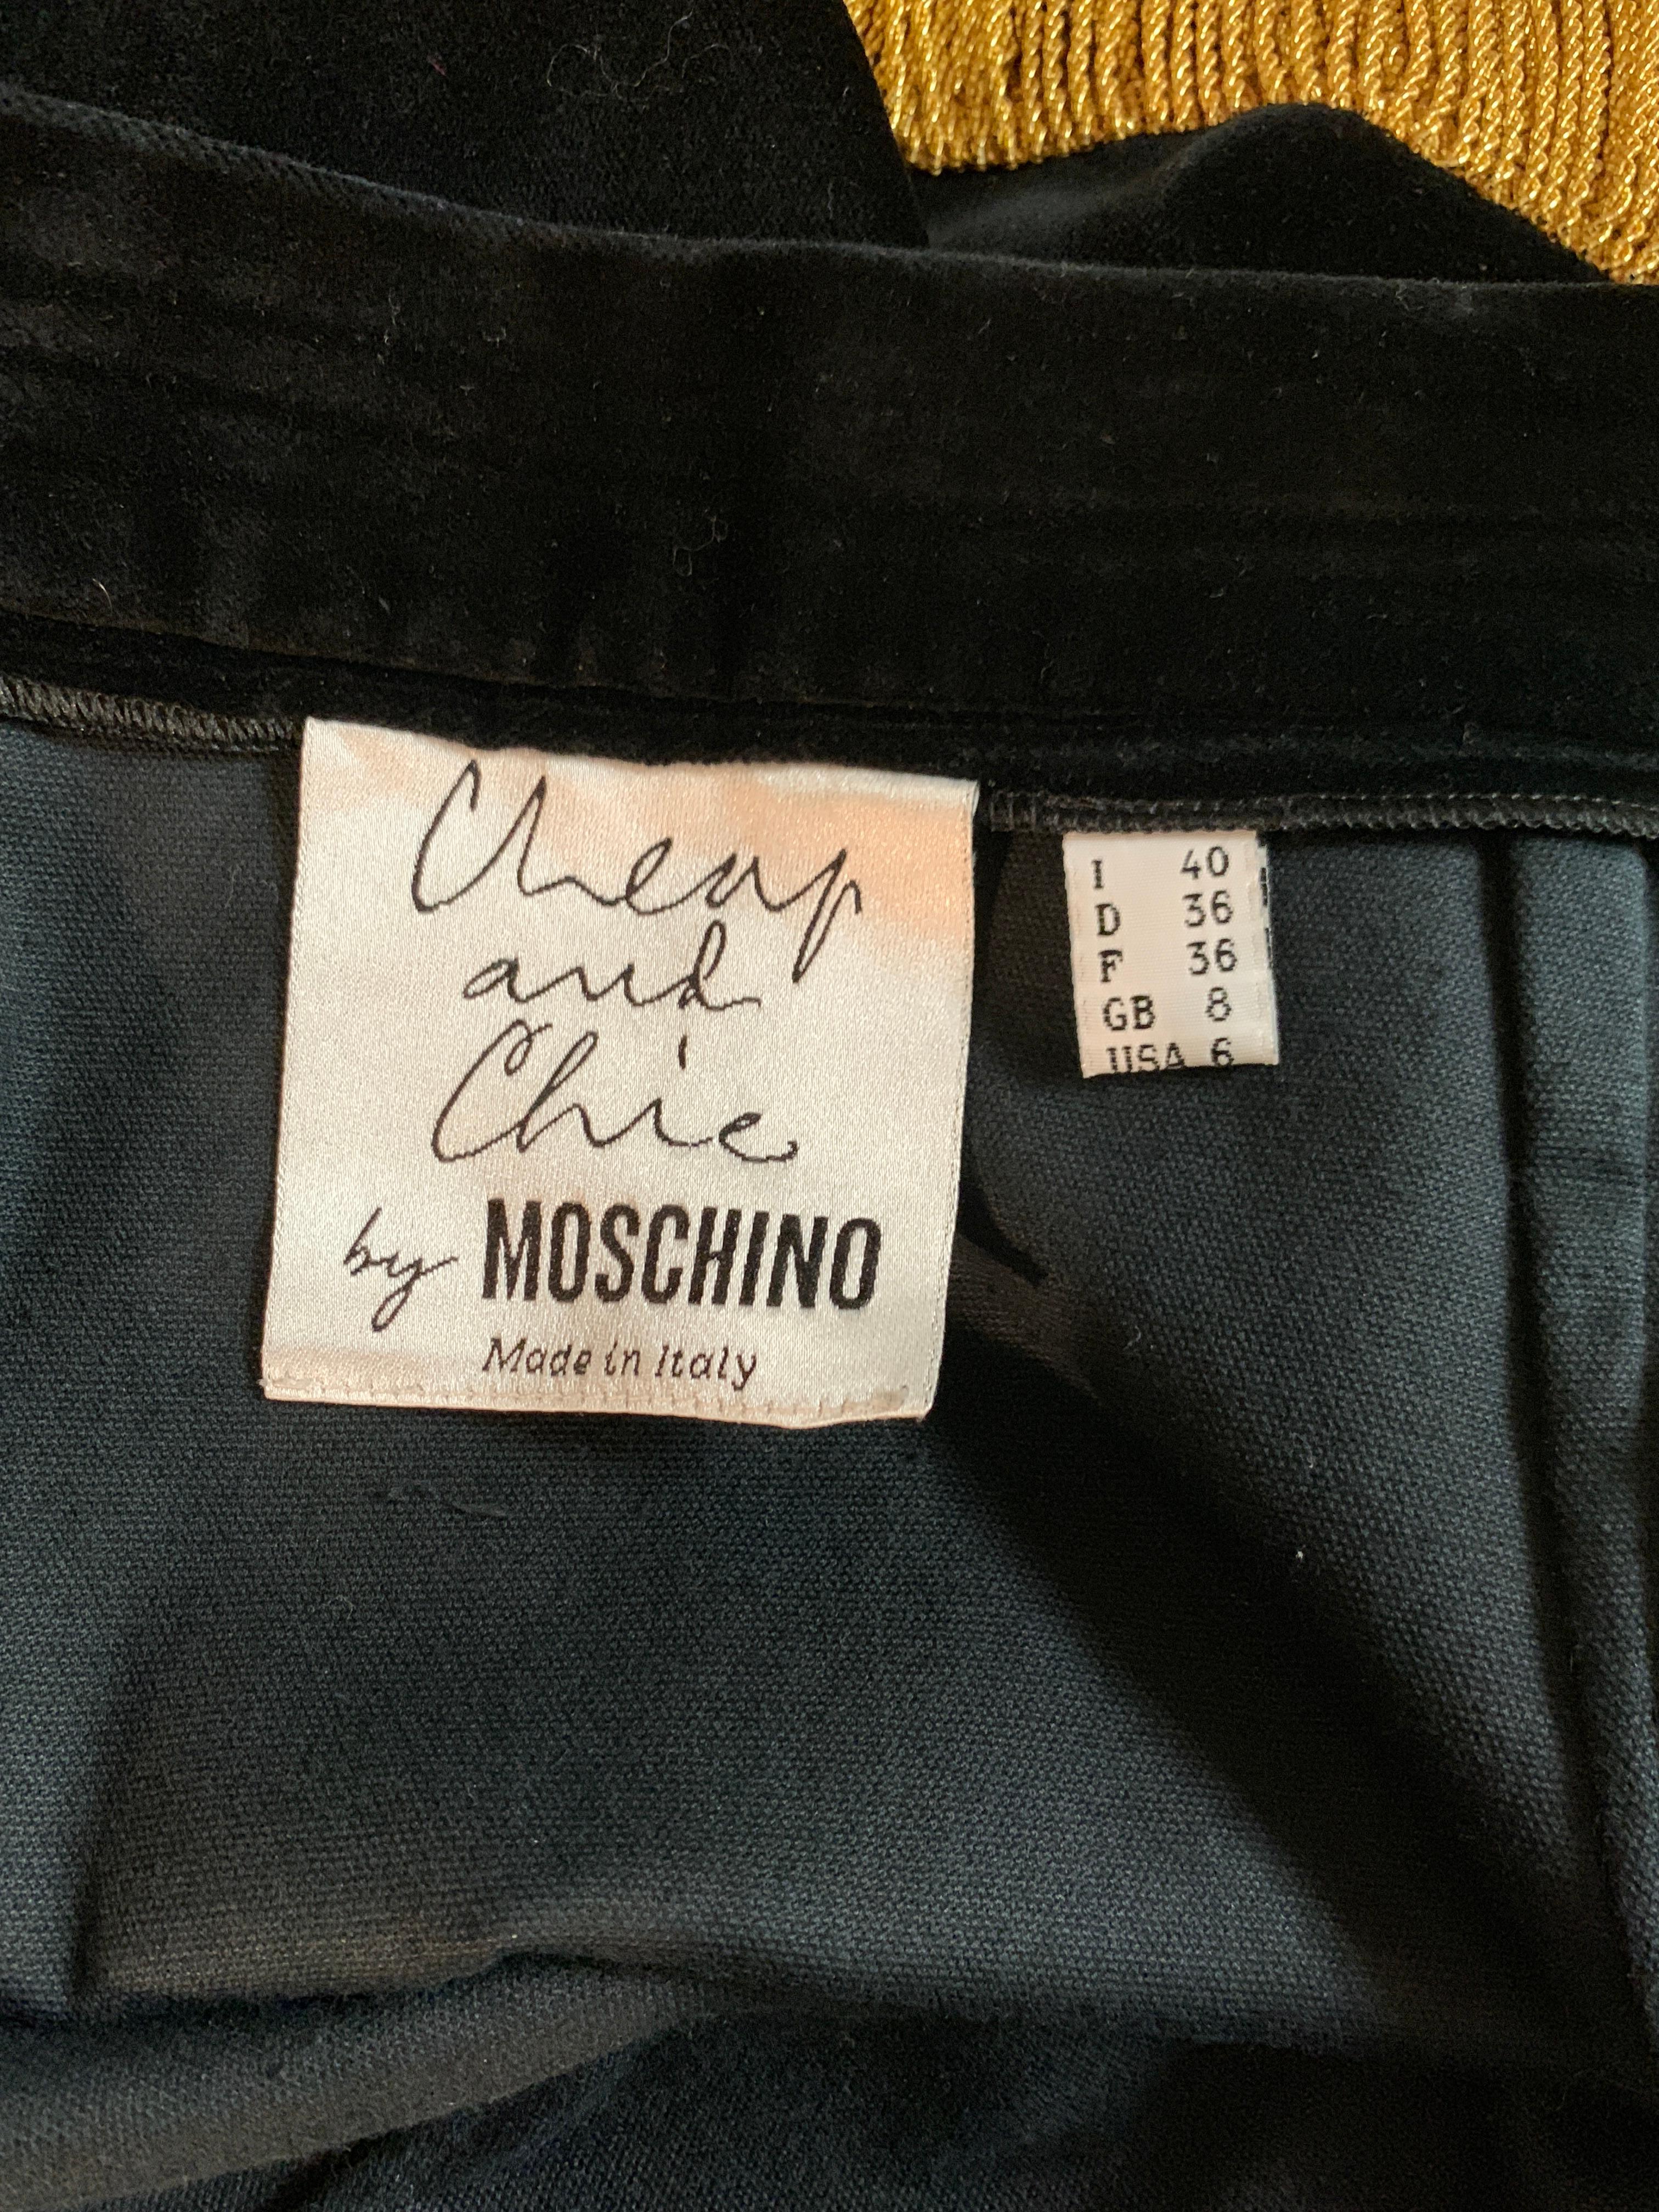 Moschino 1990s Black Velvet Pencil Skirt with Gold Fringe Trim 2